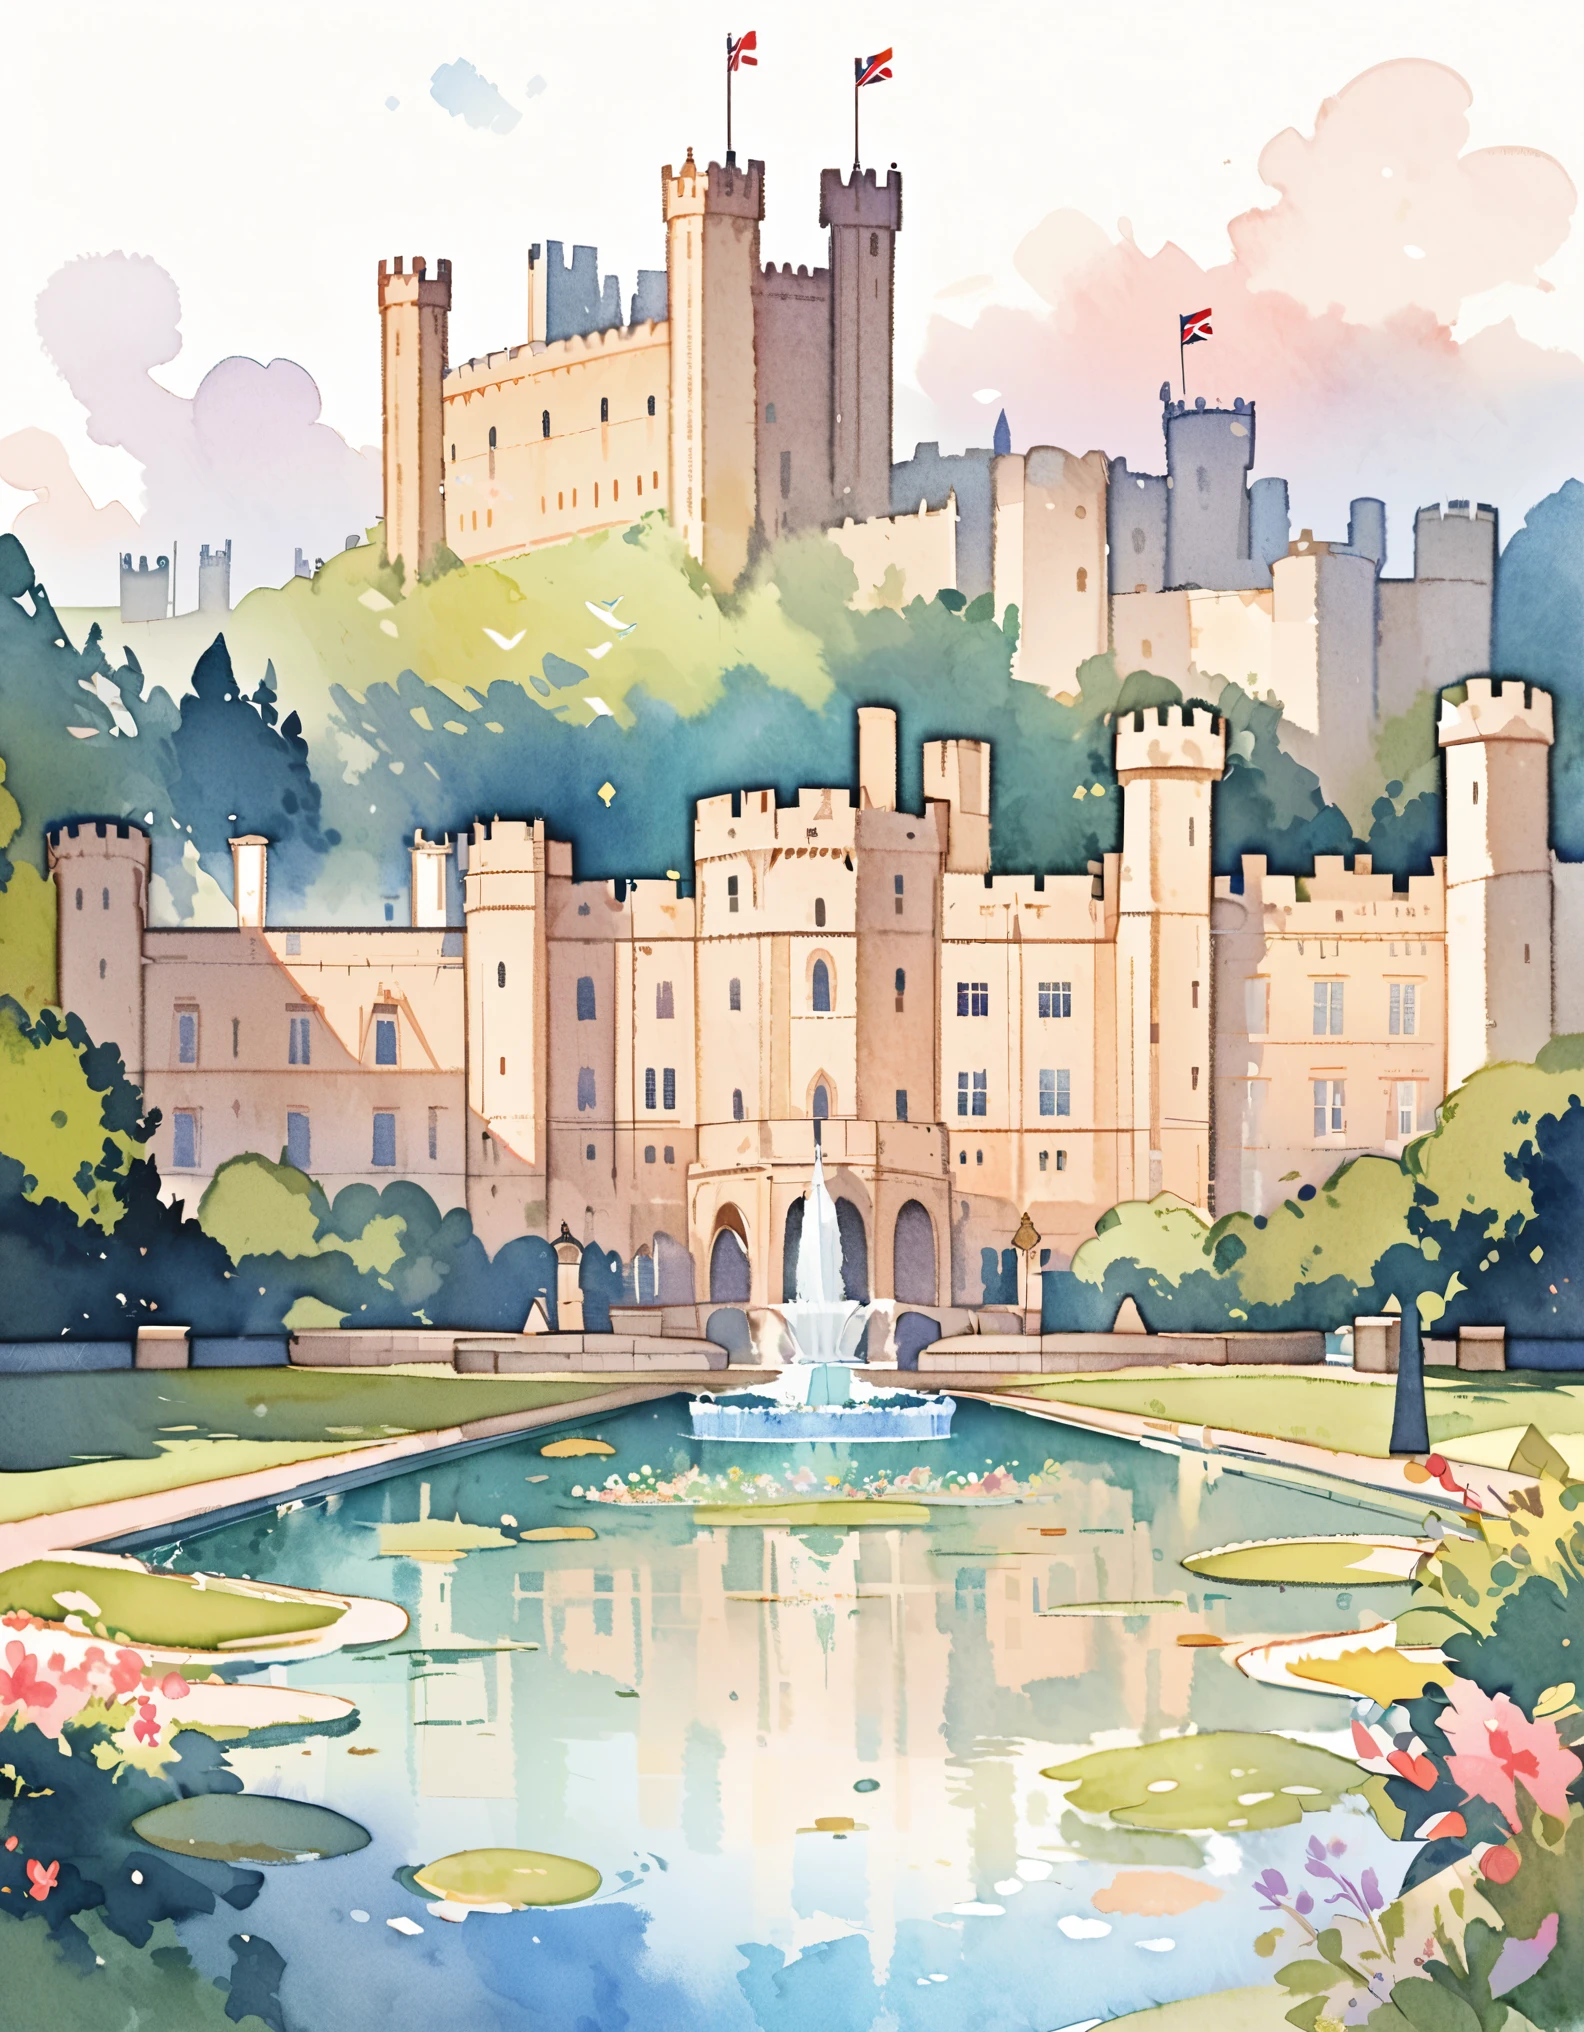 ウィンザー城, 英国君主の公式王室住居, 静かな宮殿, イギリスの城, 水彩:1.2, 気まぐれで繊細な, 子供向けのイラストのように&#39;の本, やさしい筆致, 薄暗い, 淡い色彩が幻想的な雰囲気を醸し出す.